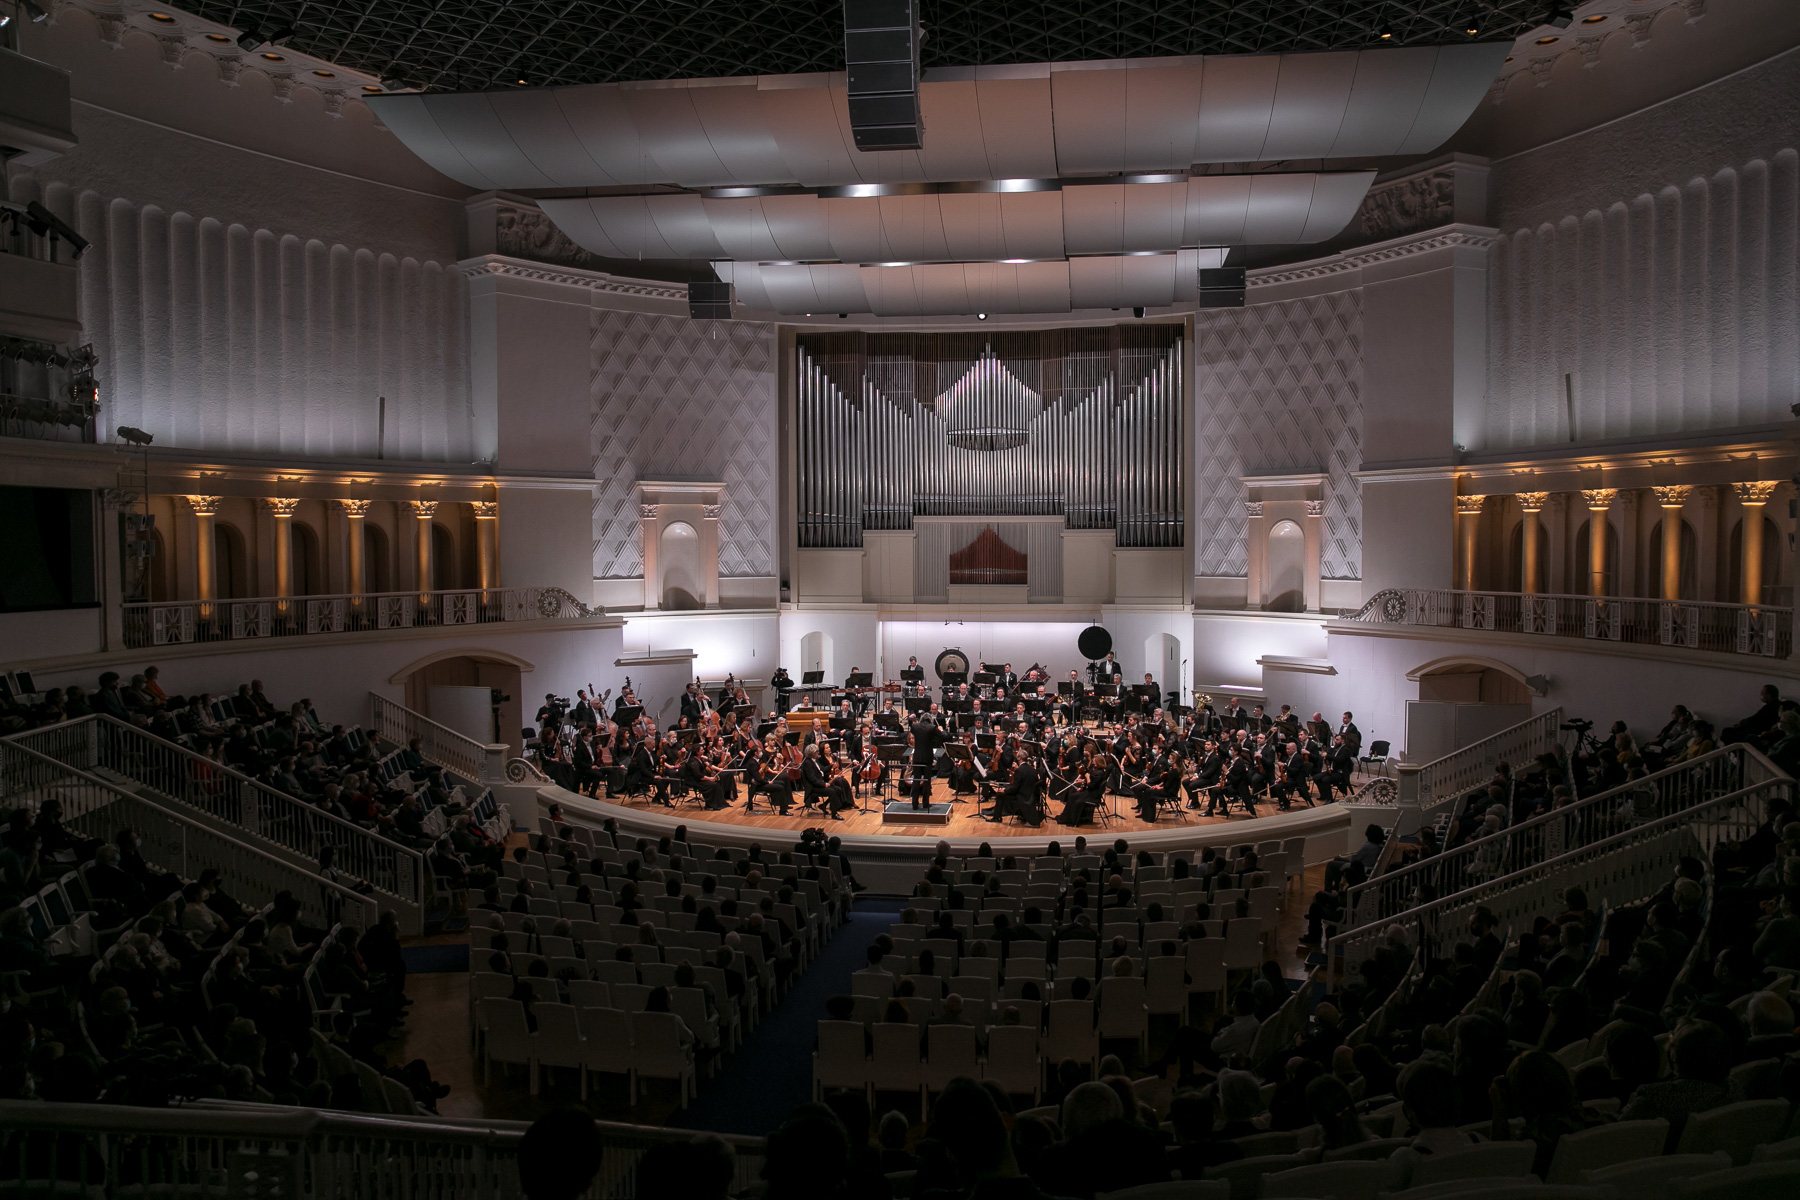 Московская филармония концертный зал имени п.и.Чайковского